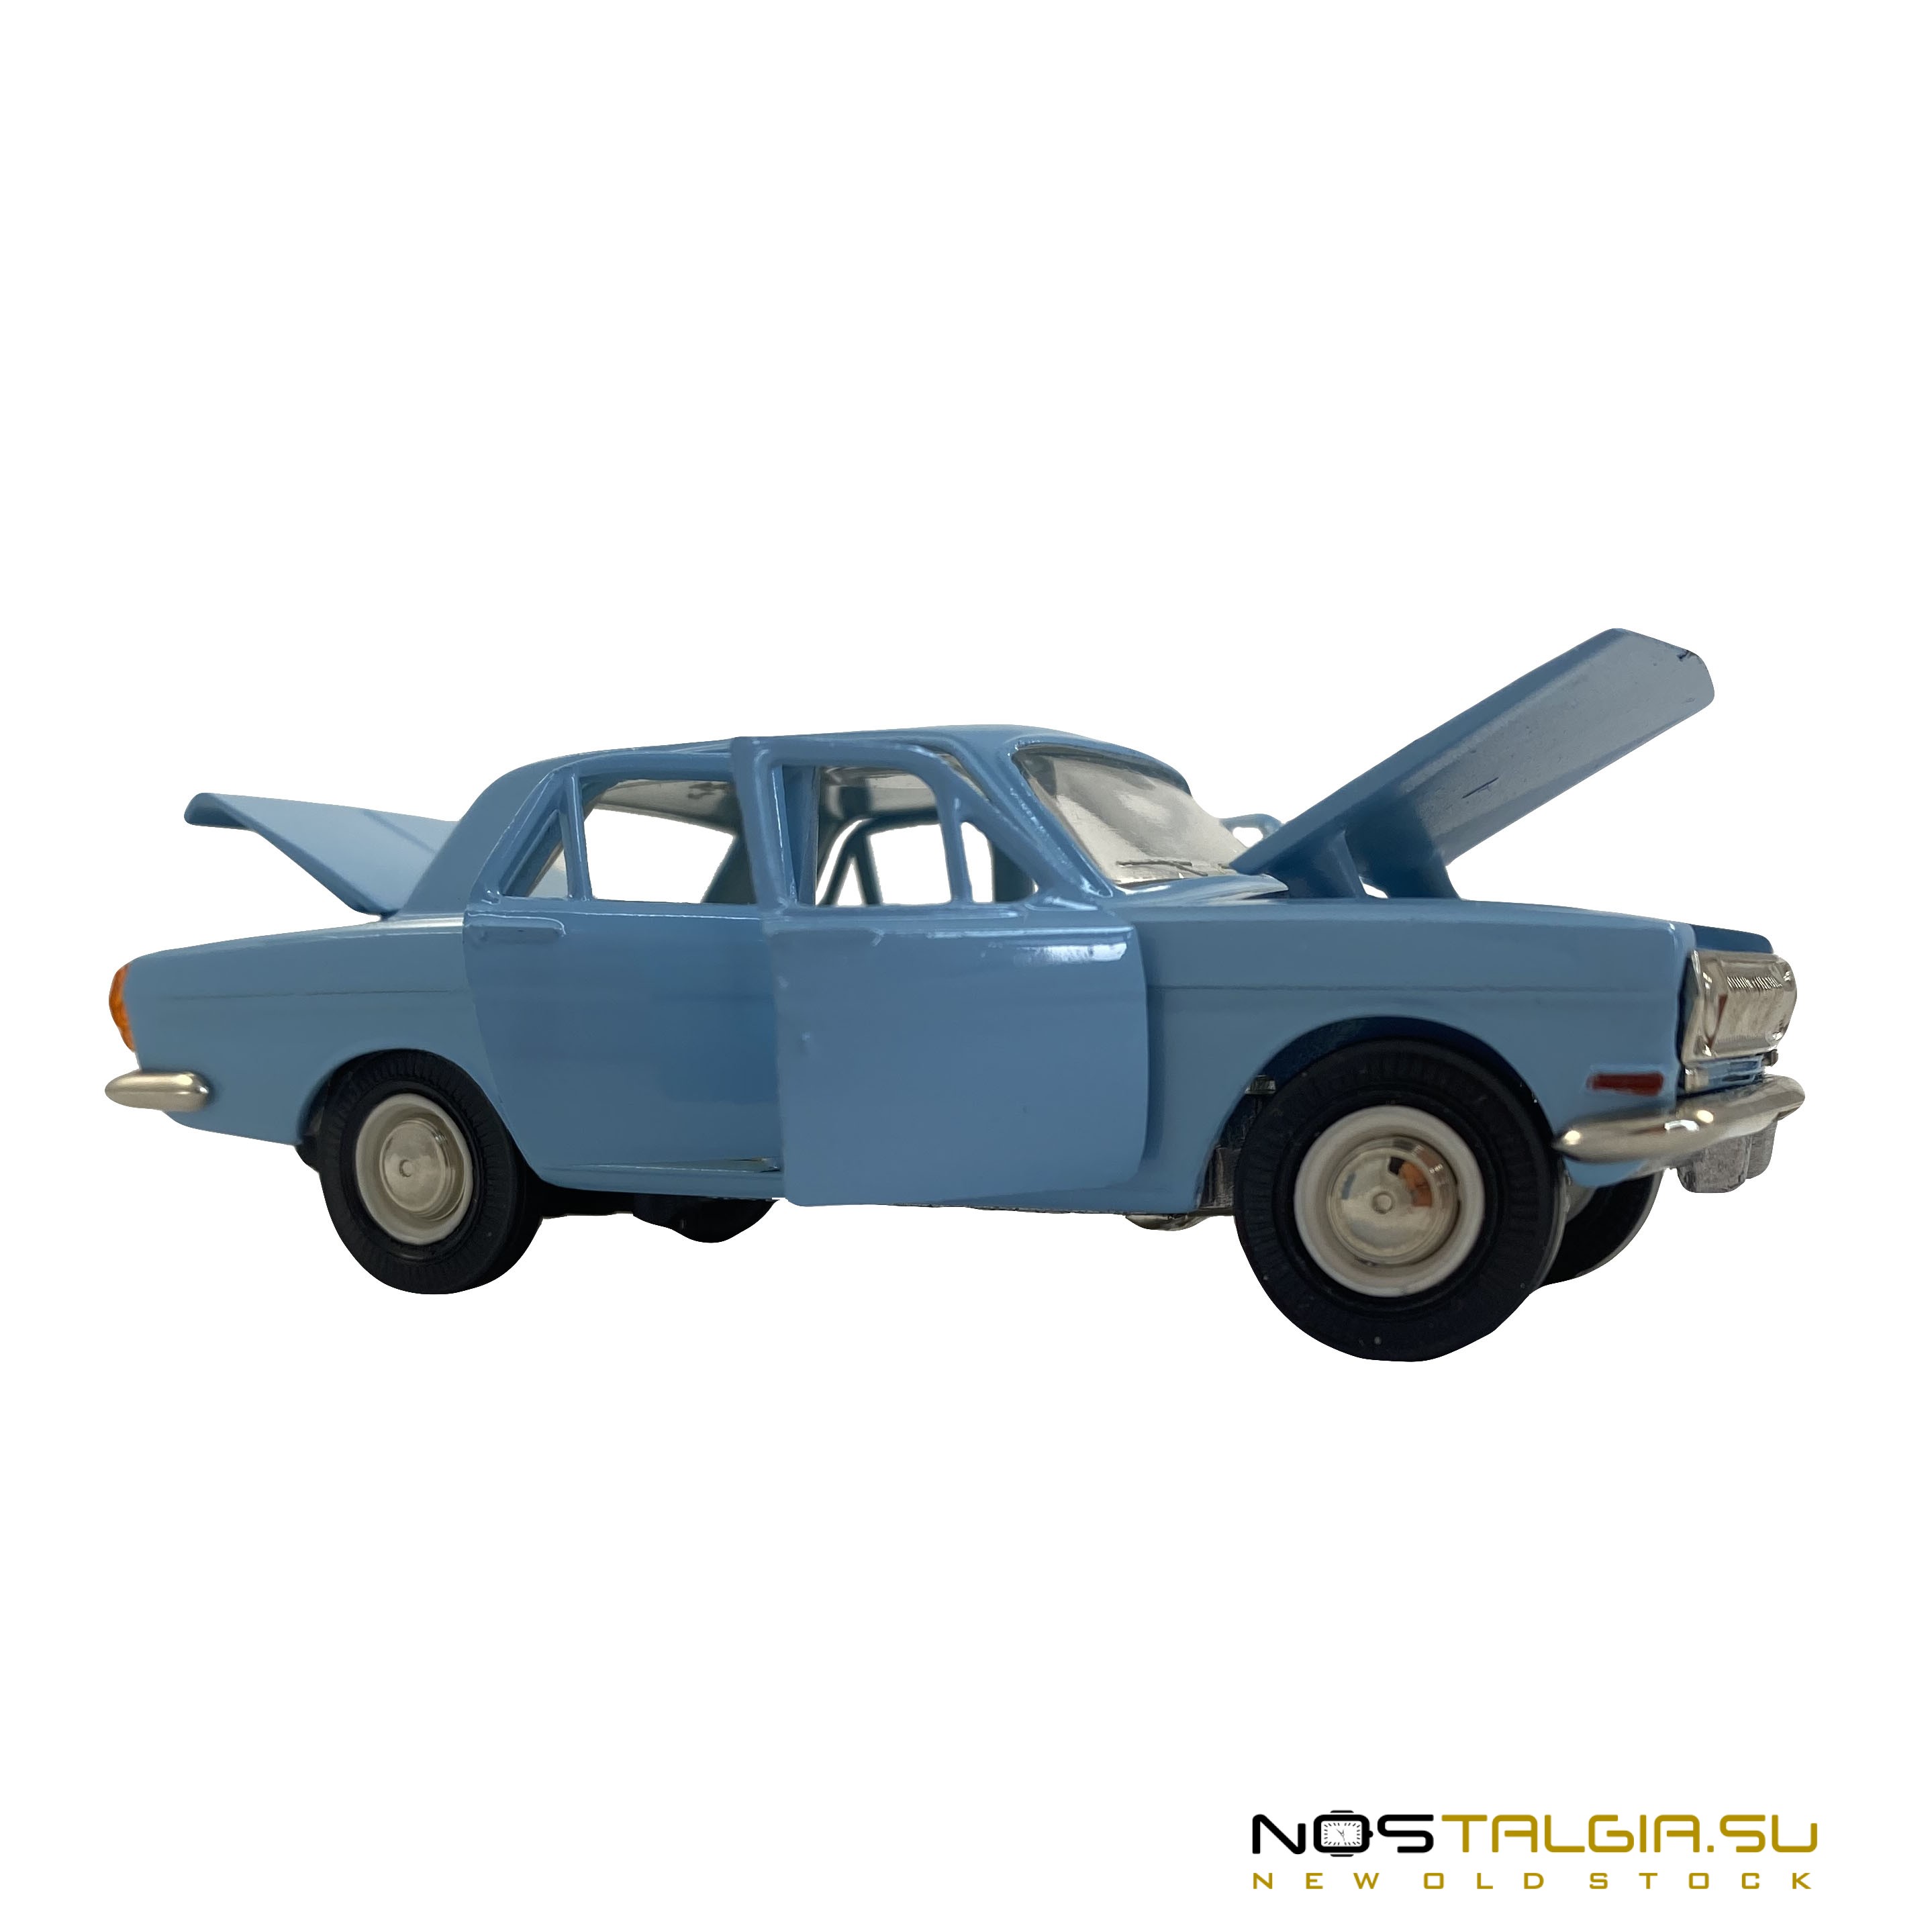 Коллекционная модель автомобиля "Волга" ГАЗ-24, СССР, масштаб 1:43, идеальное состояние